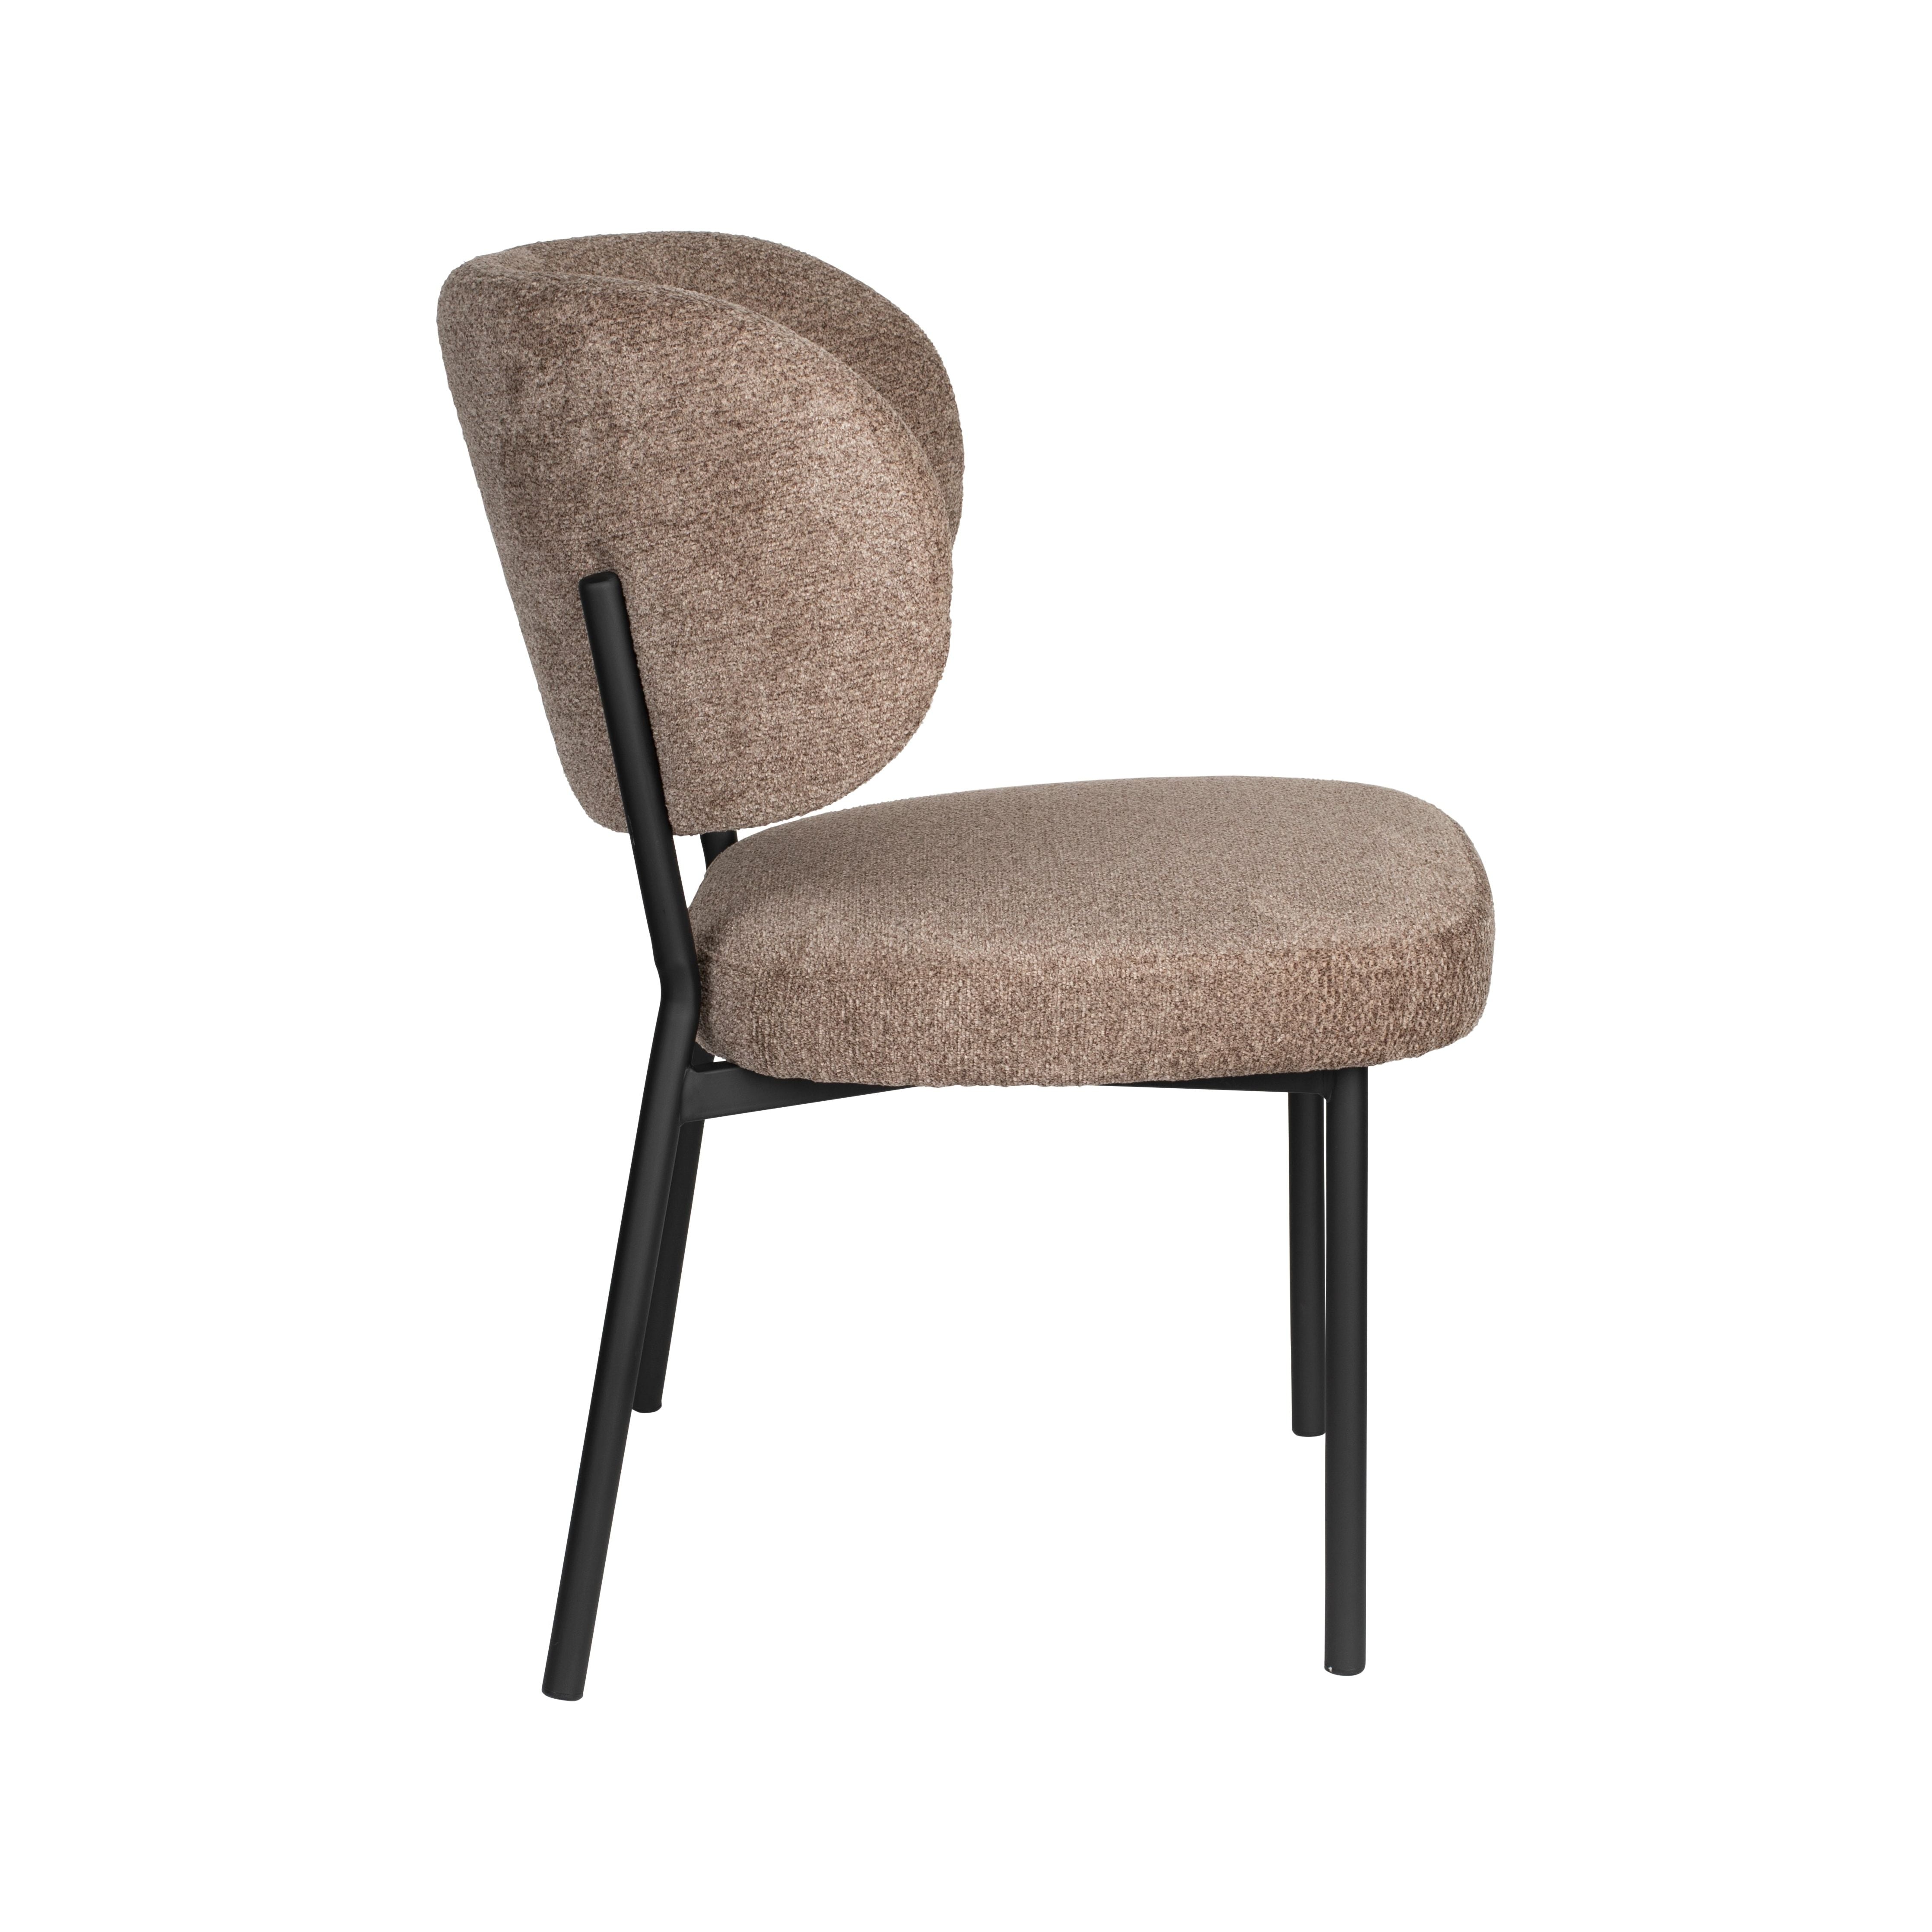 Chair sanne brownie | 2 pieces